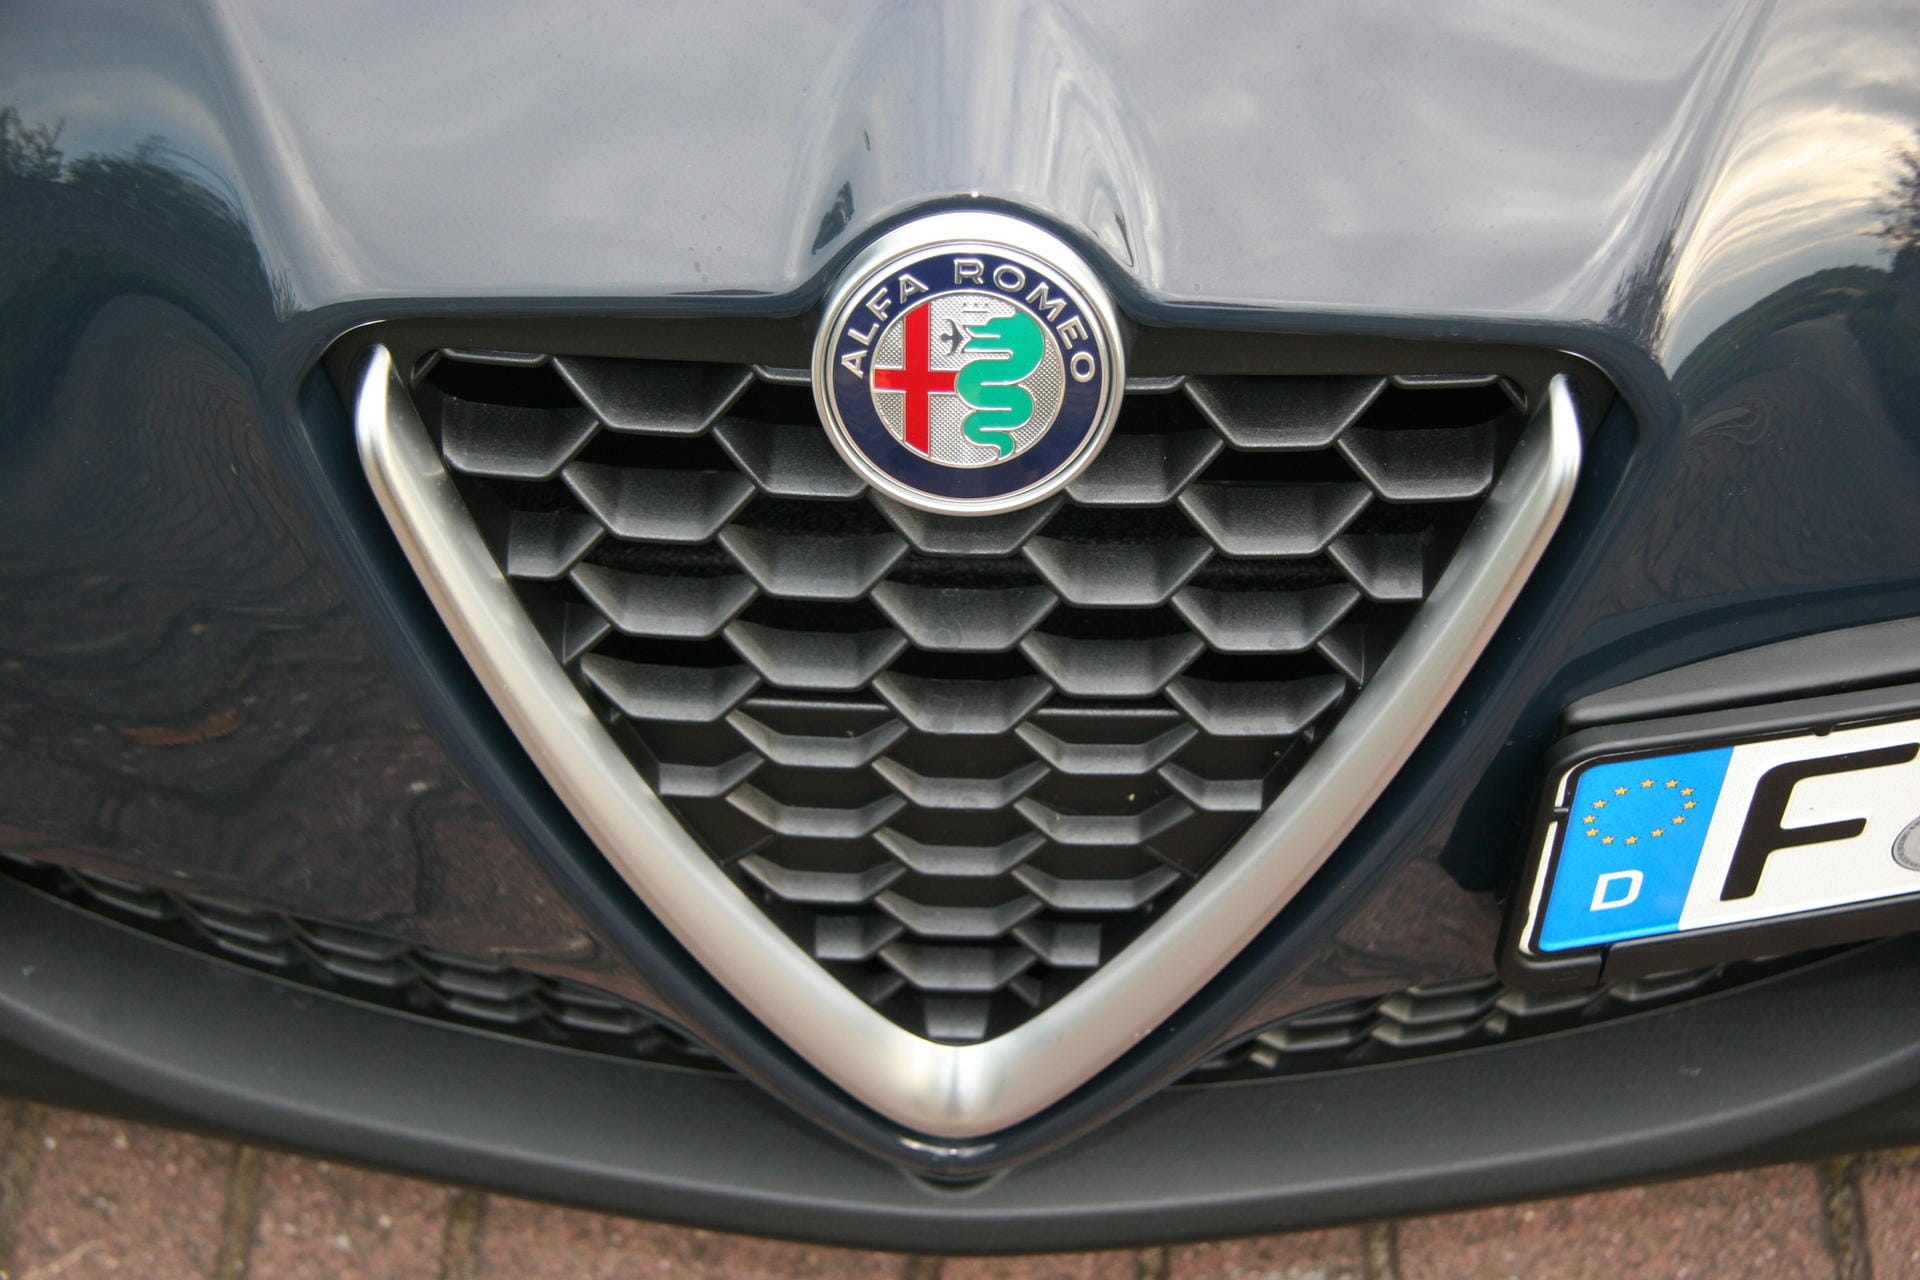 Das Scudetto orientiert sich nun am neuen Design, vorgestellt bei der Giulia.